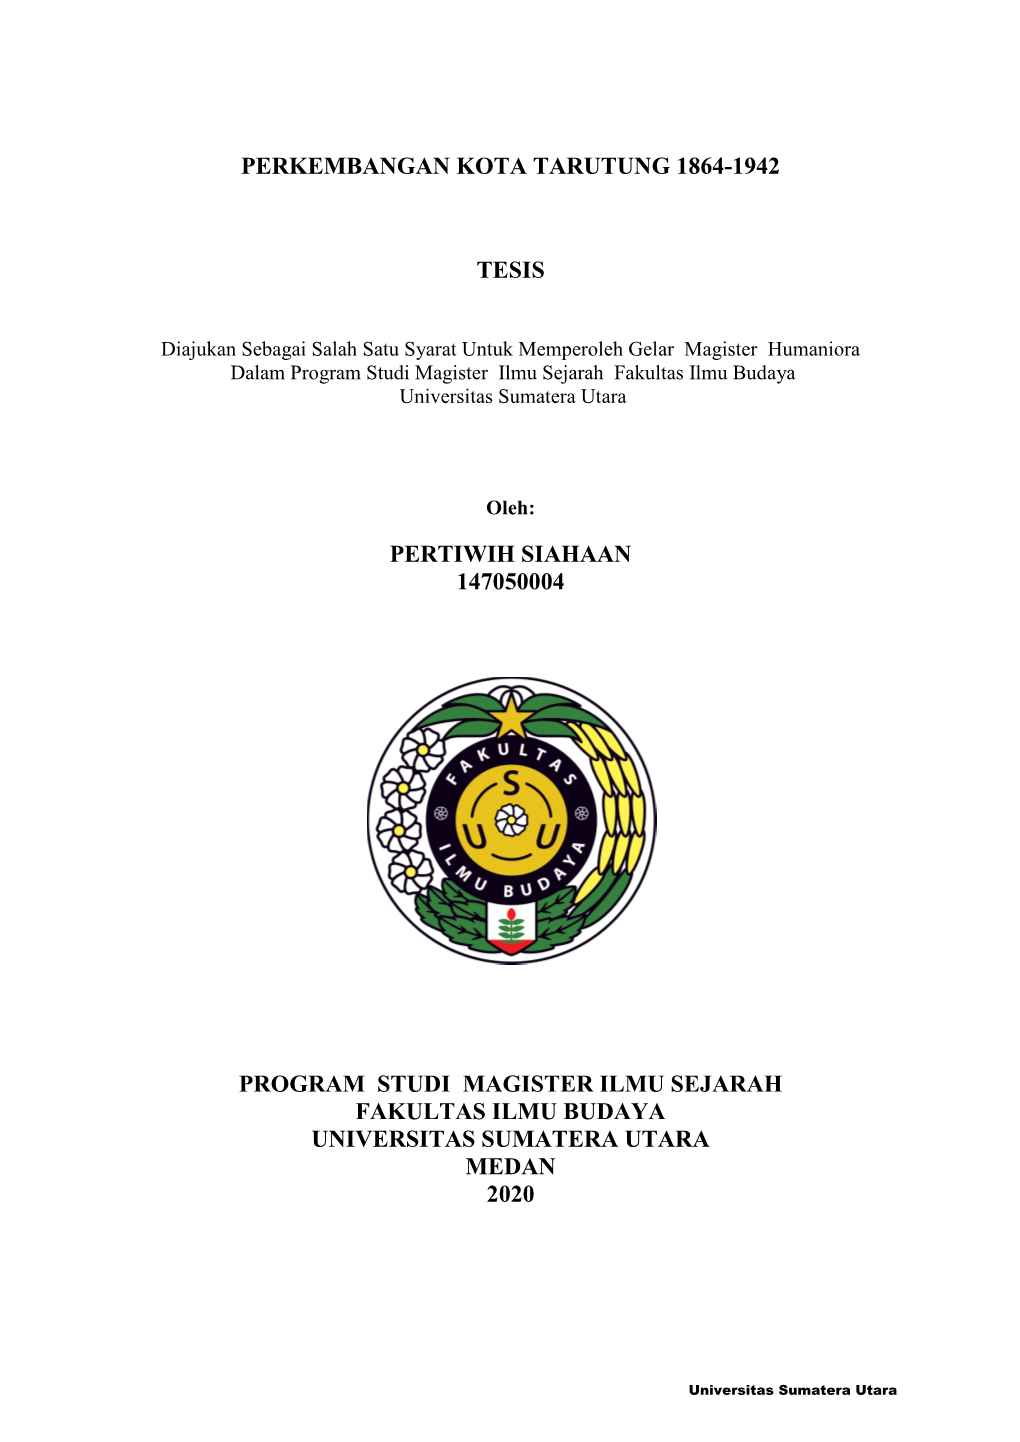 Pertiwih Siahaan 147050004 Program Studi Magister Ilmu Sejarah Fakultas